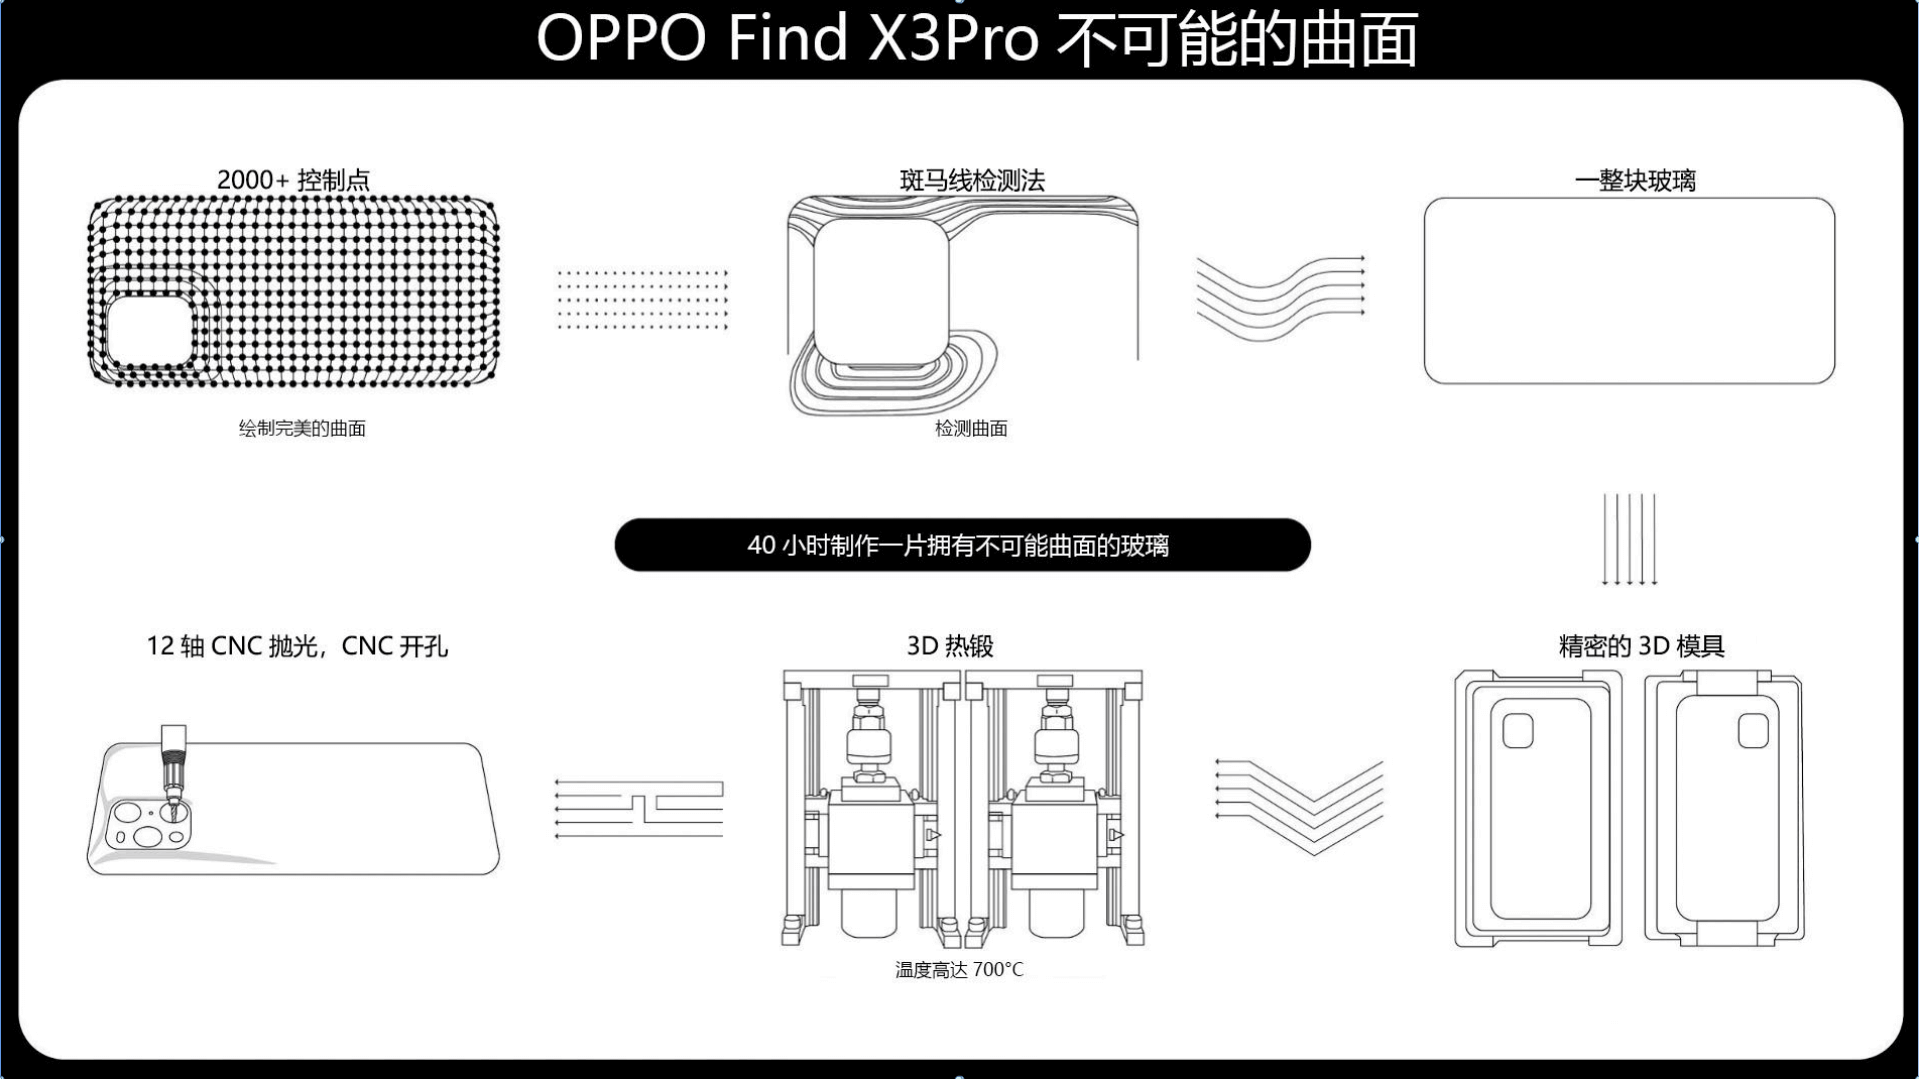 OPPO Find X3 series